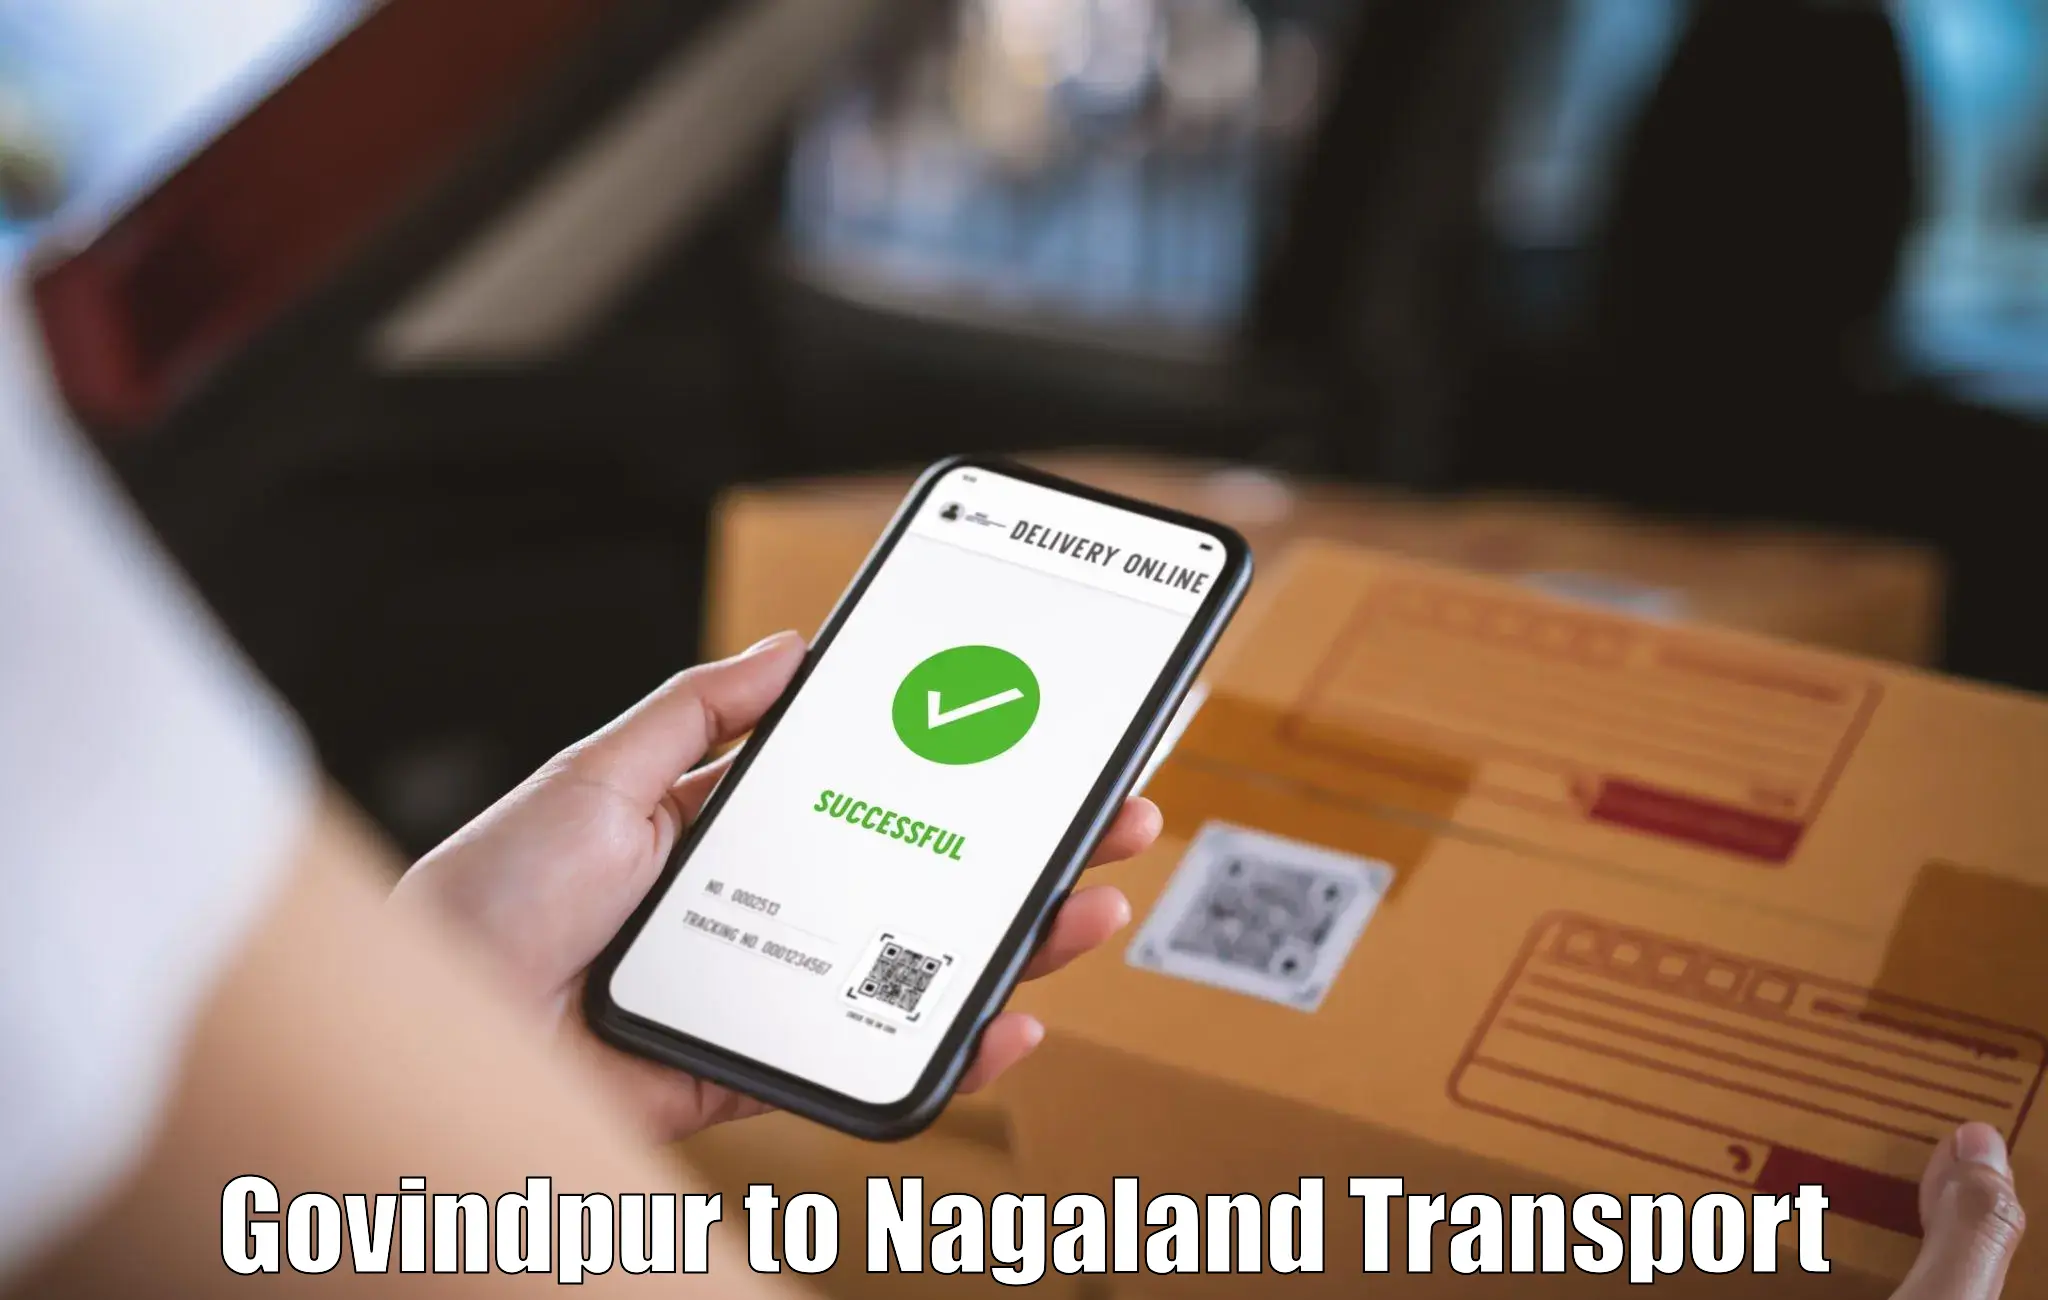 Delivery service Govindpur to NIT Nagaland